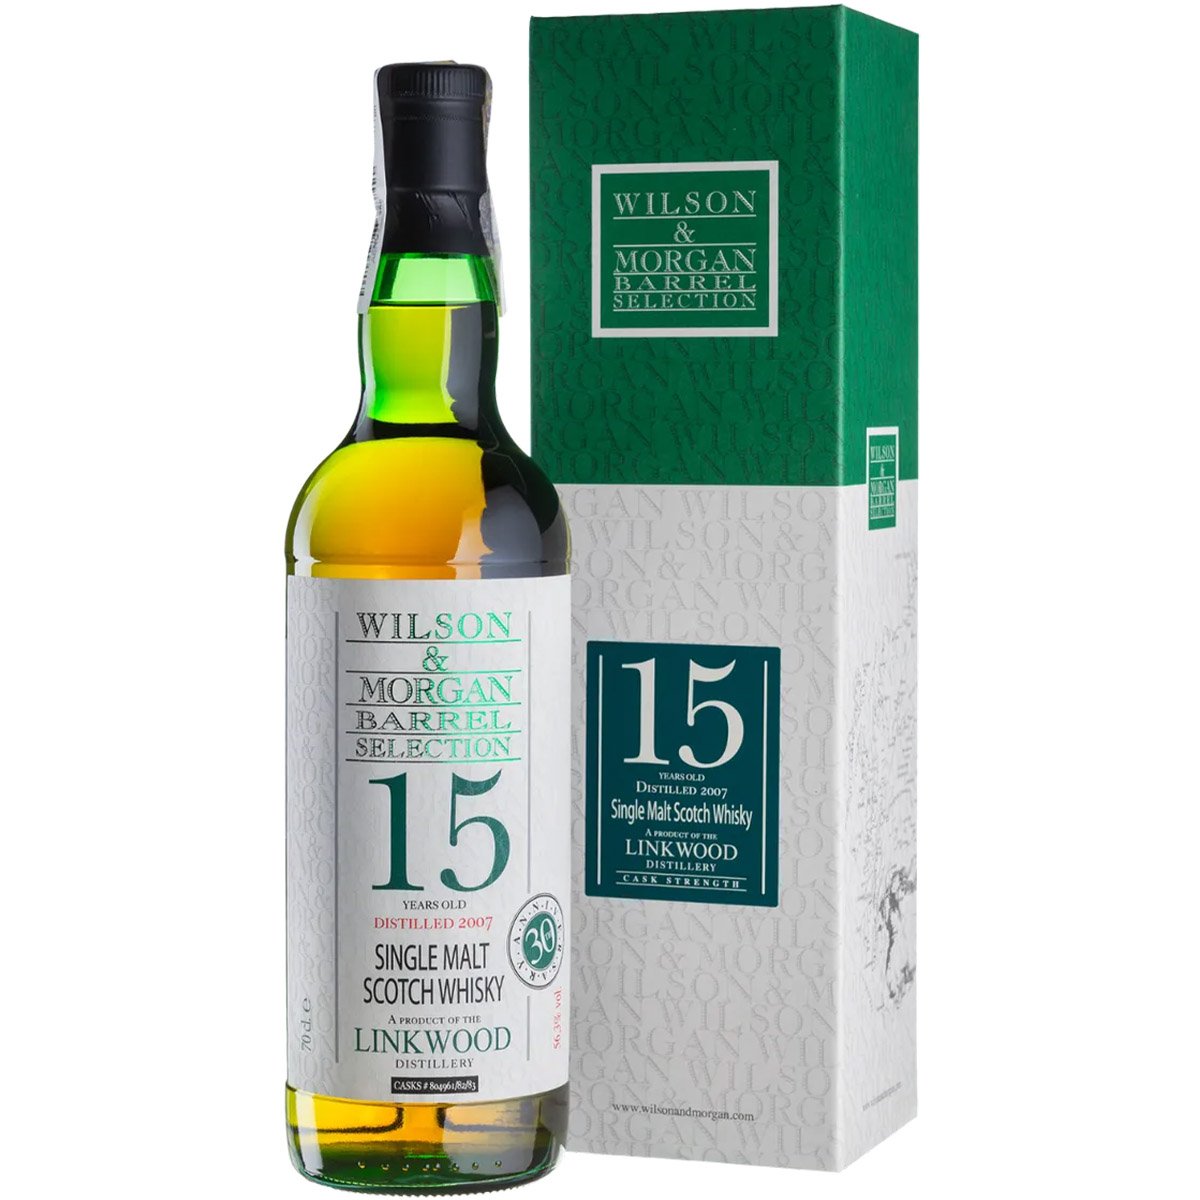 Віскі Wilson & Morgan Barrel Selection Linkwood 15 yo Oloroso Finish Cask Single Malt Scotch Whisky 56,3% 0.7 л у подарунковій коробці - фото 1